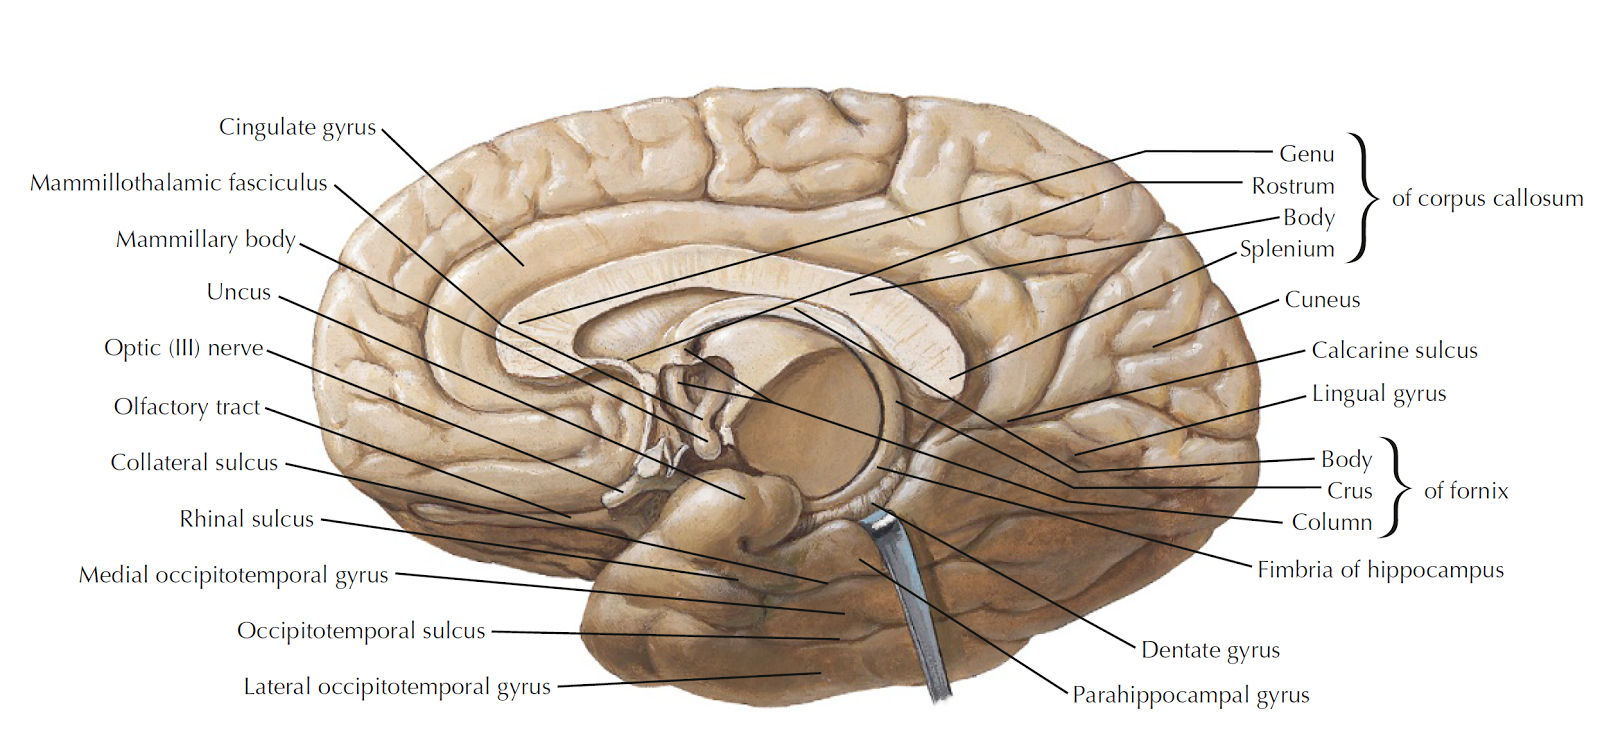 Brain diagrams